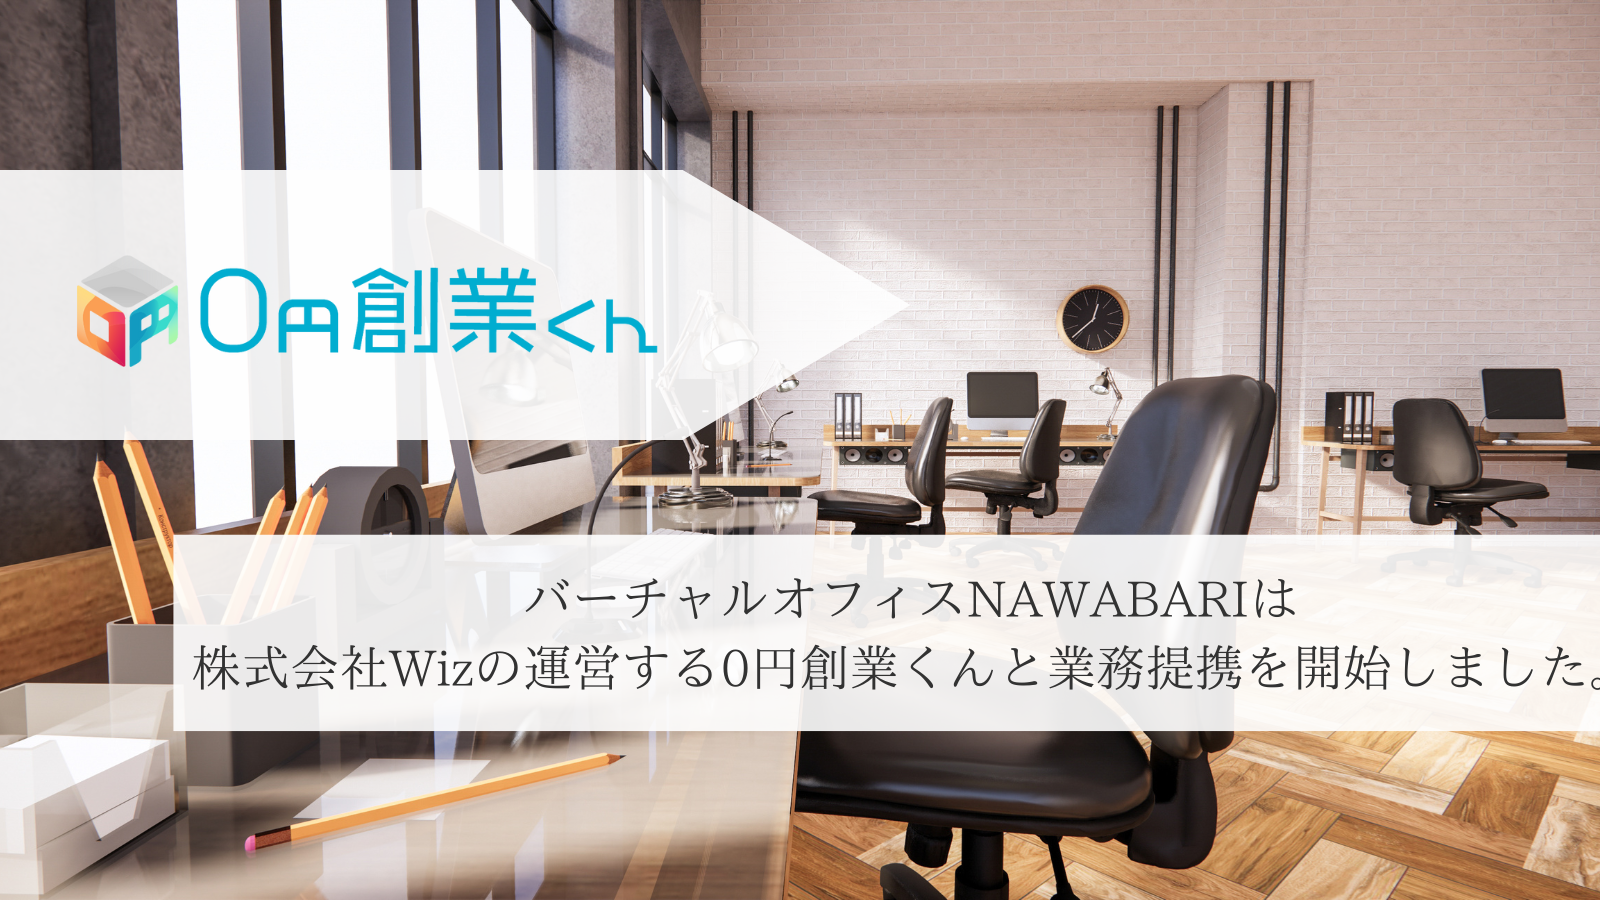 バーチャルオフィスNAWABARIは株式会社Wizの運営する「0円創業くん」と提携を開始しました。|バーチャルオフィスNAWABARI